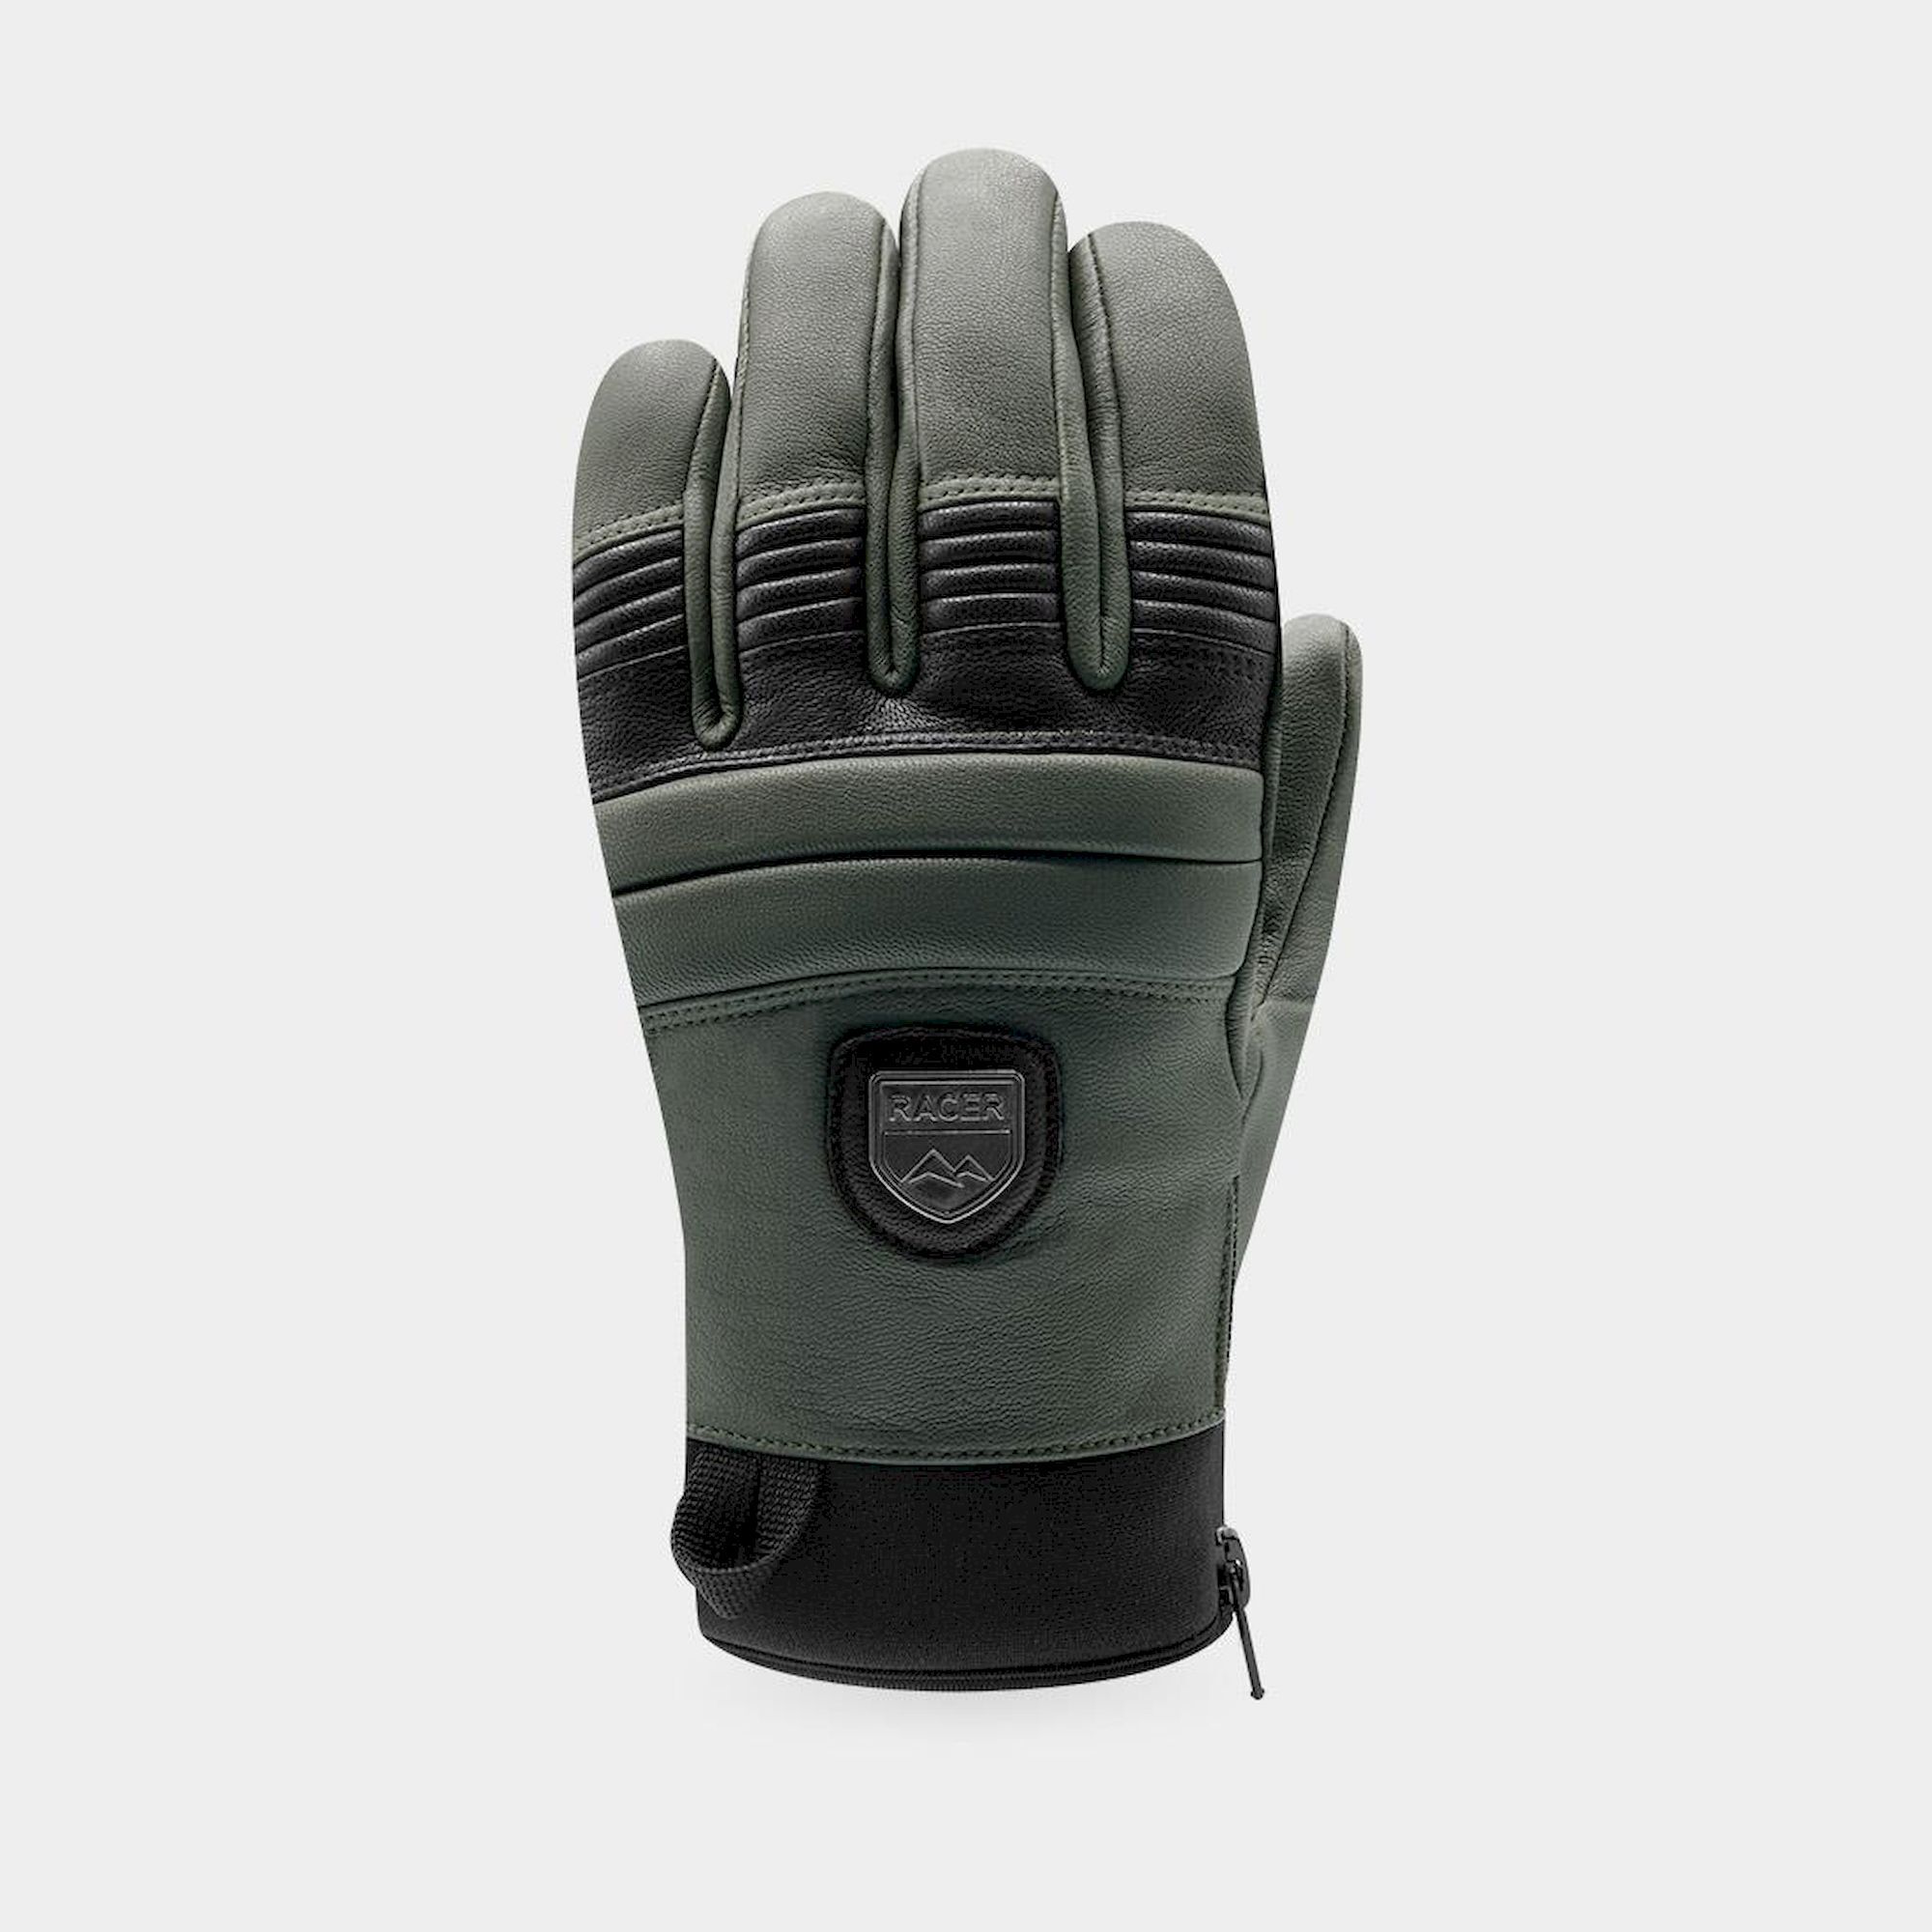 Racer 90 Leather 2 - Ski gloves - Men's